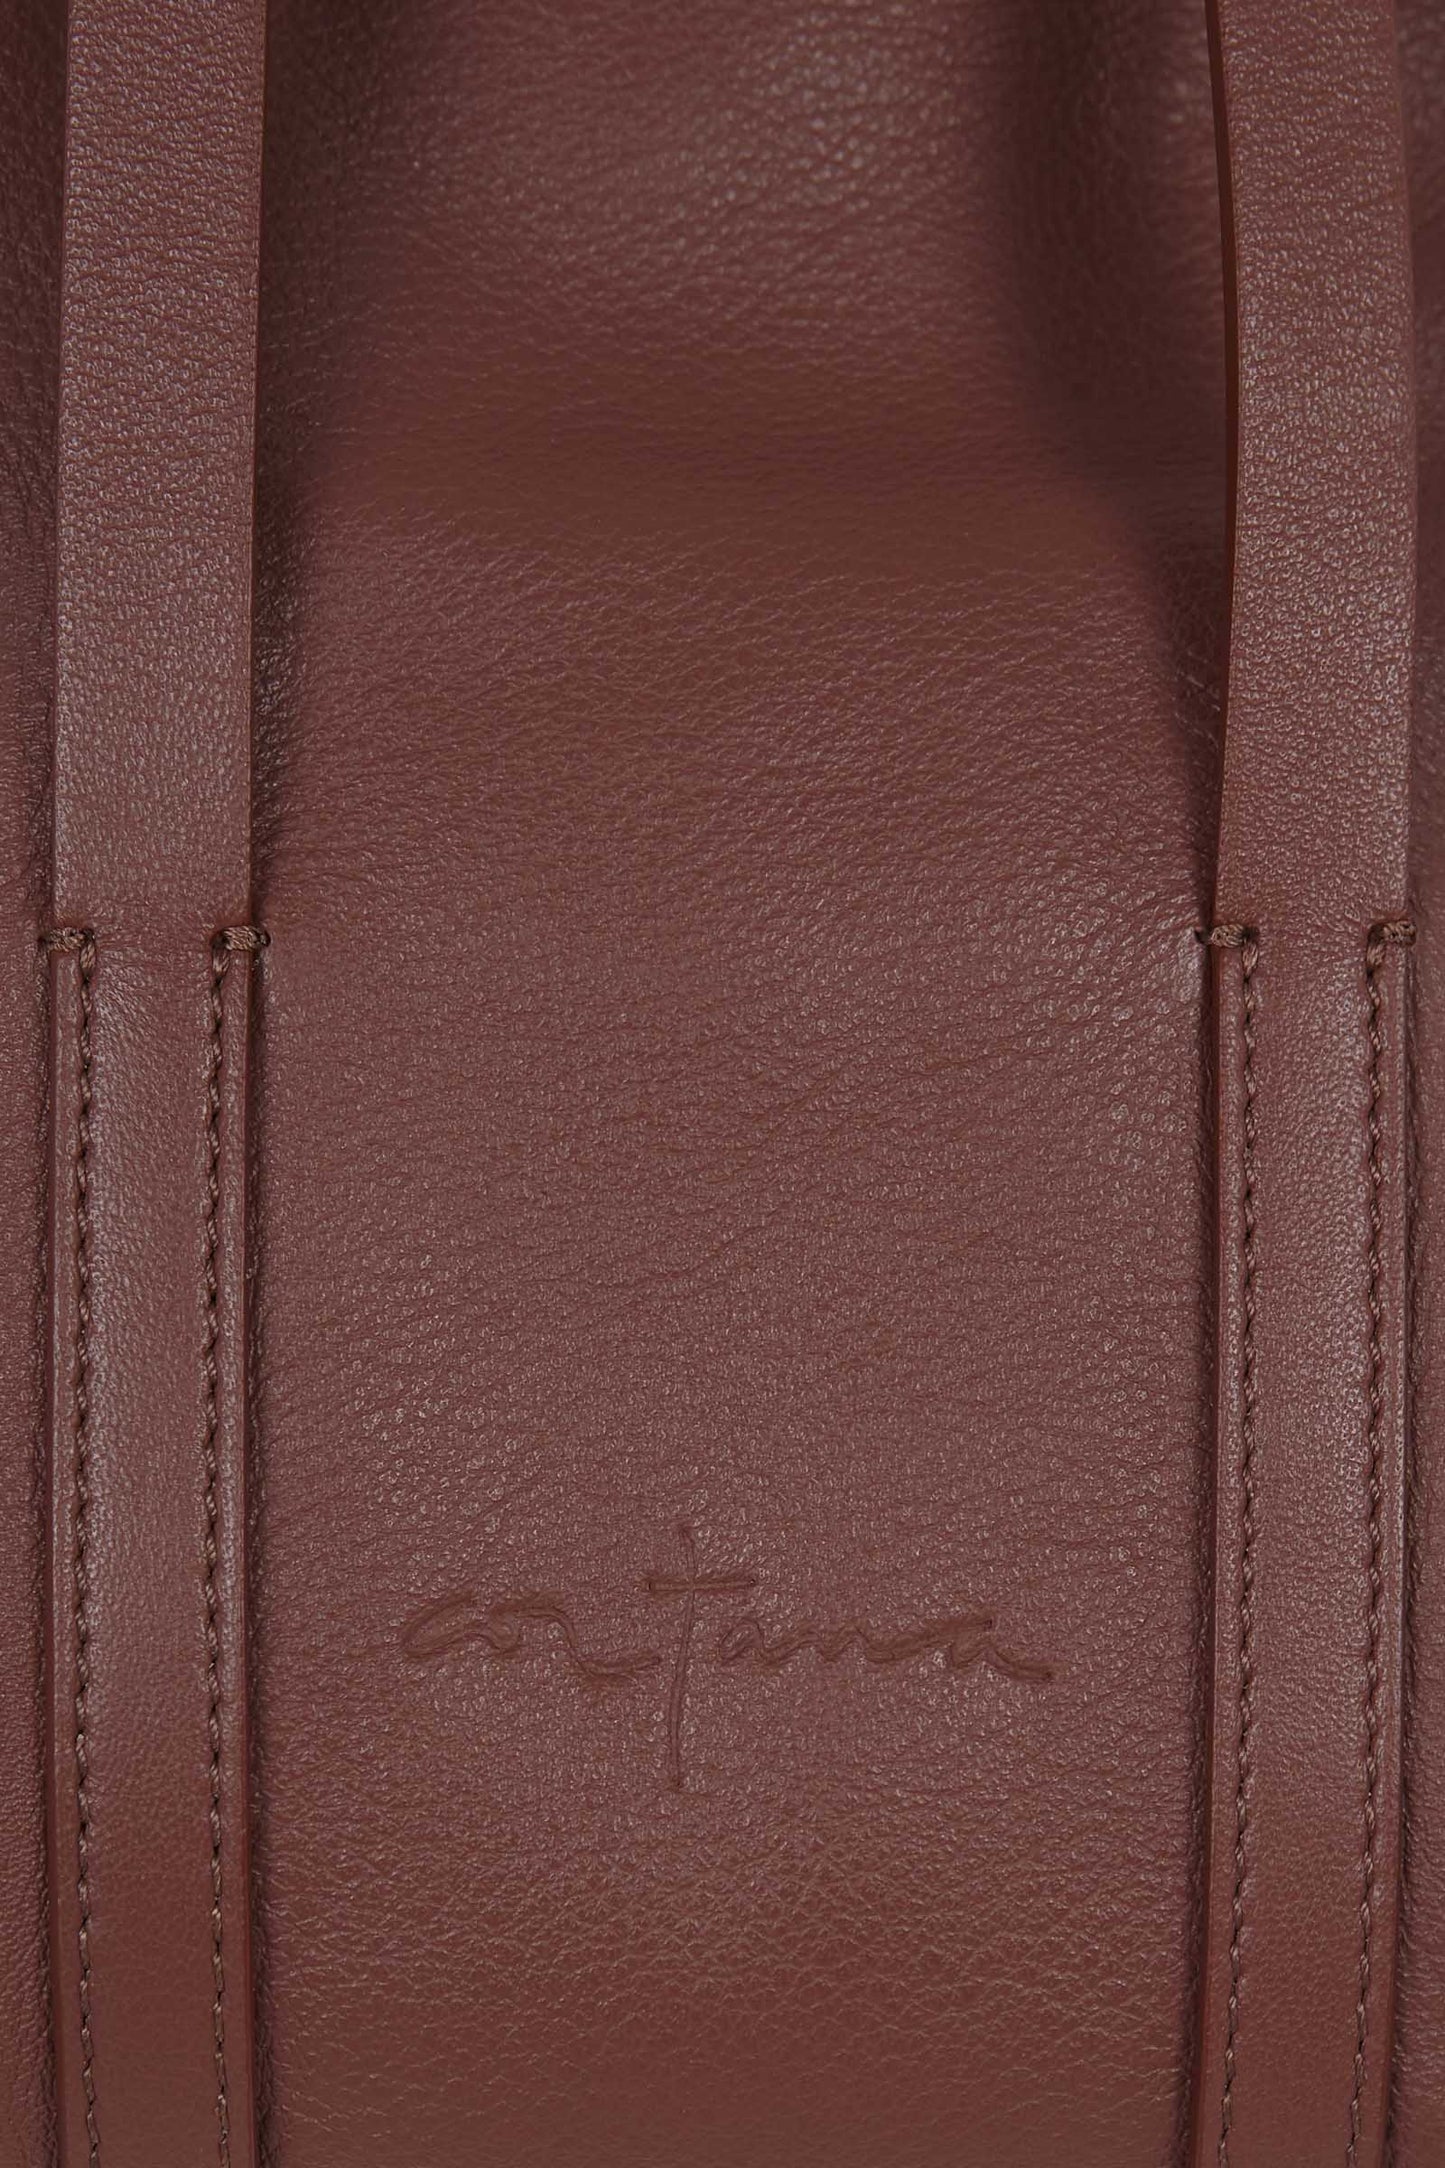 Mini Folded, cuire leather bag